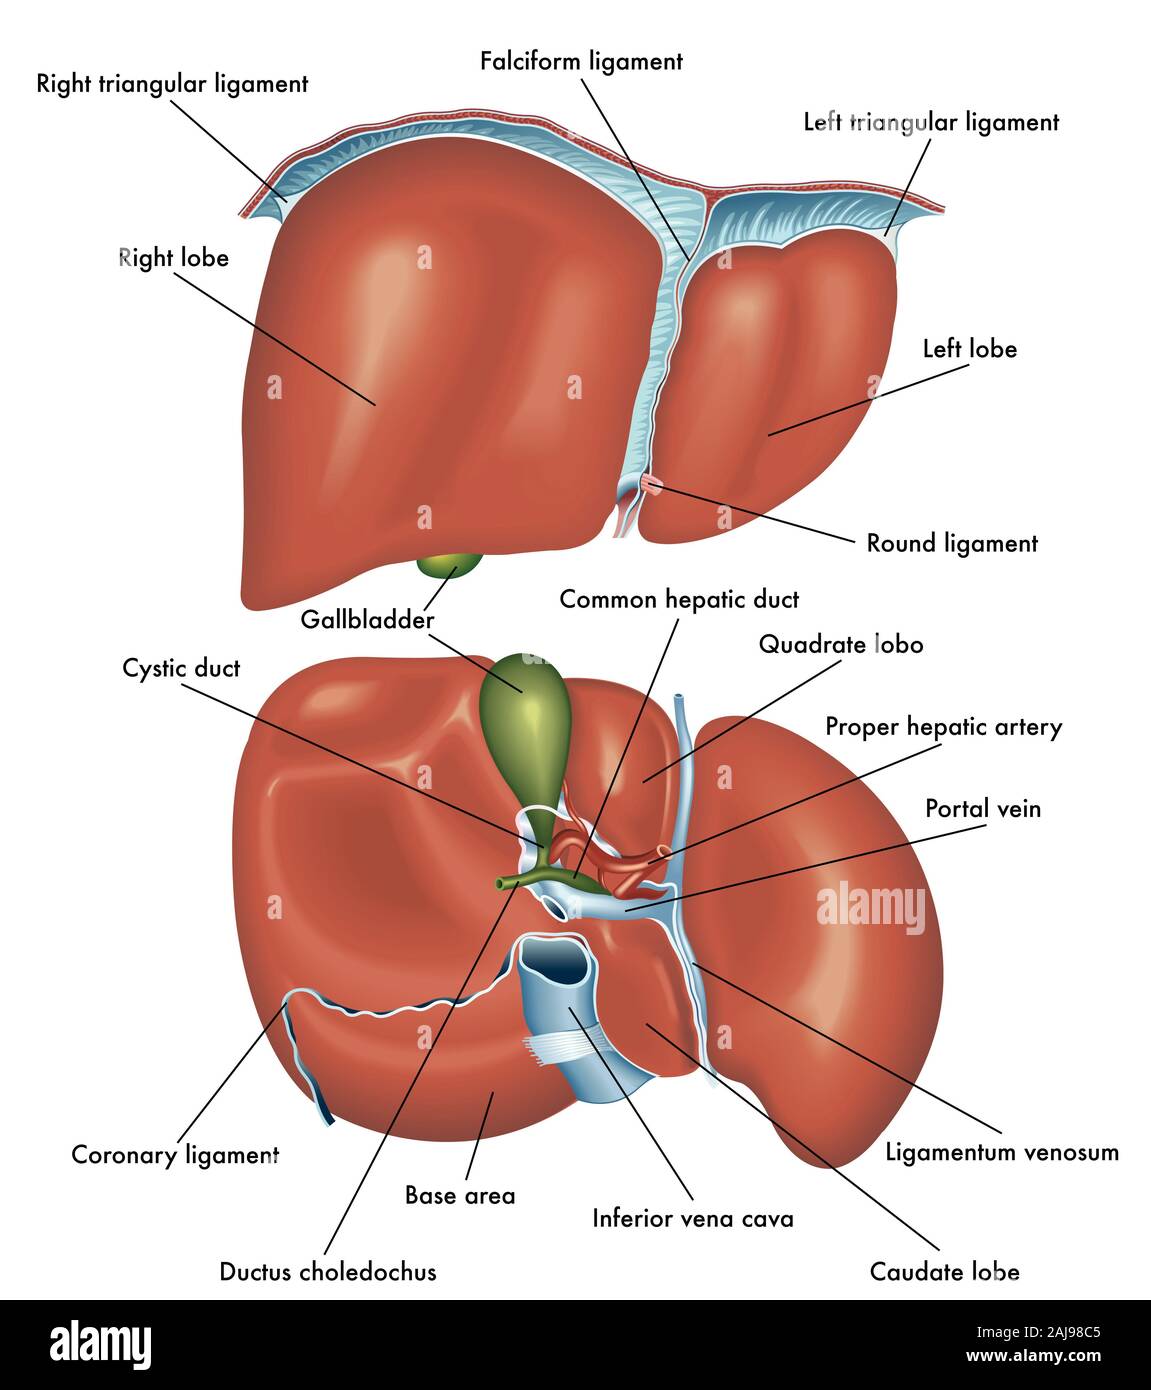 Medical illustrazione che mostra l'anatomia della vista frontale e vista posteriore del fegato con la descrizione delle varie parti. Foto Stock